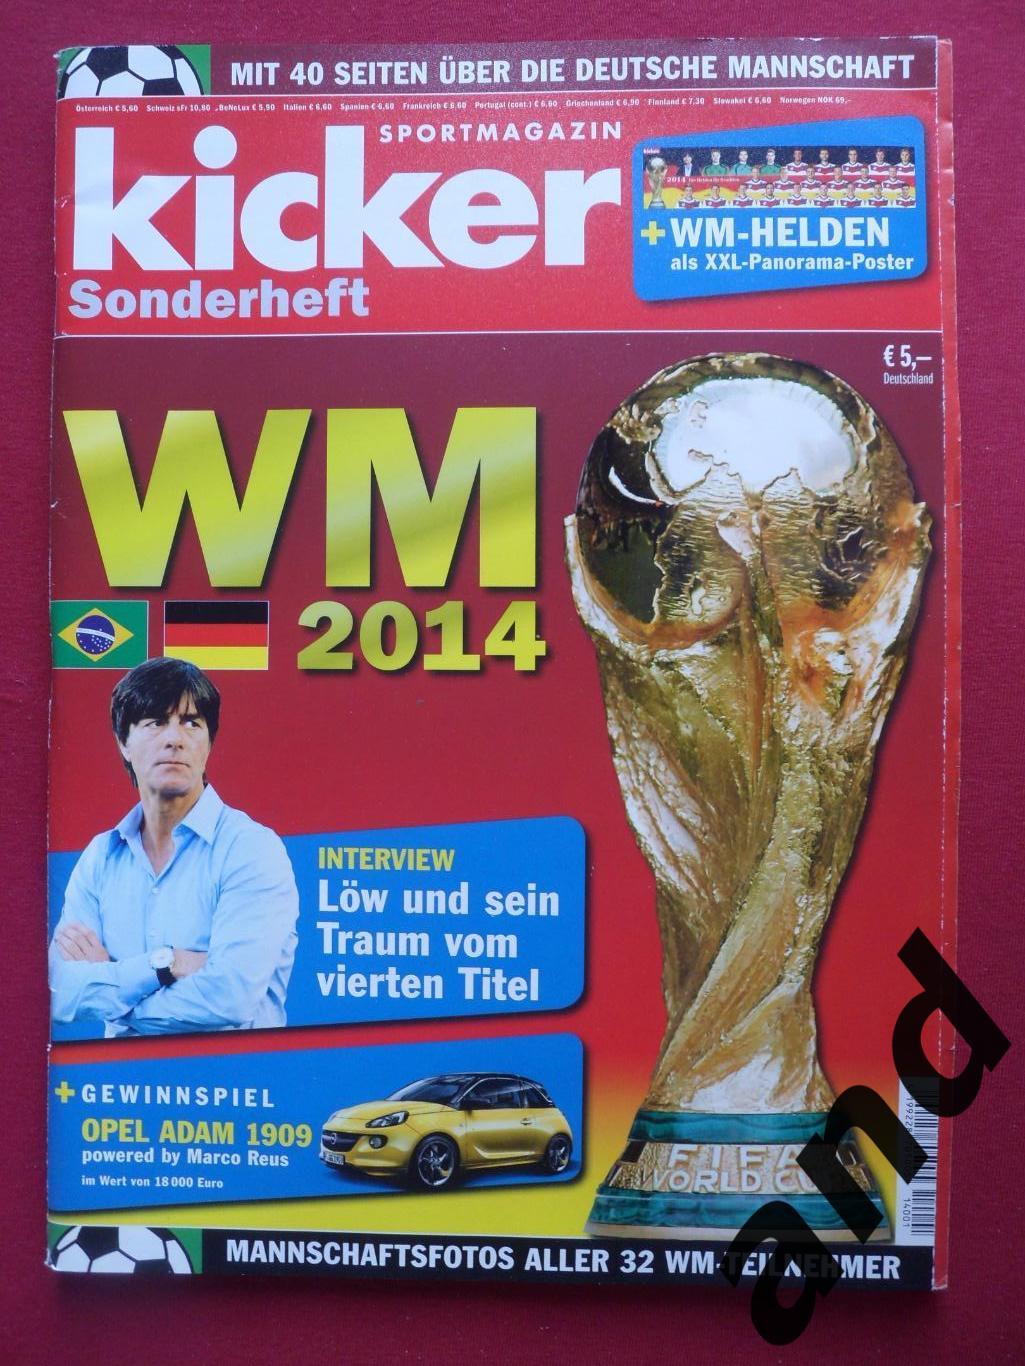 Kicker (спецвыпуск) чемпионат мира по футболу 2014 (постеры всех команд),